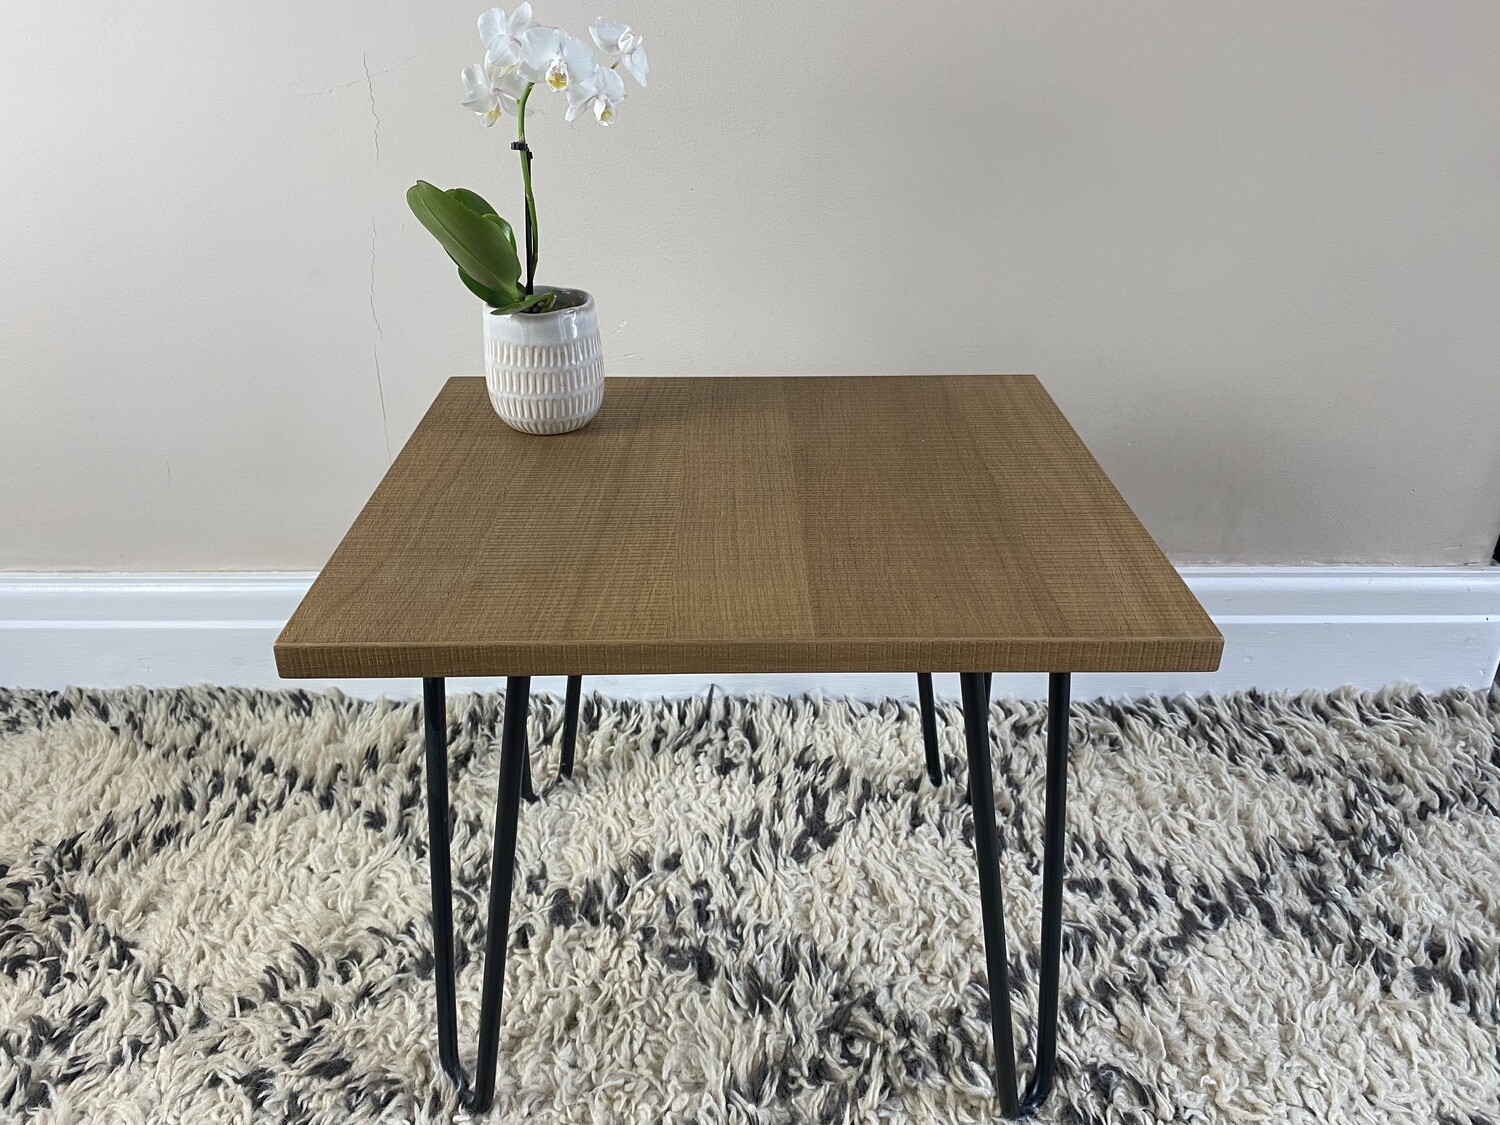 Textured walnut veneer 'Edie' side table with steel hairpin legs